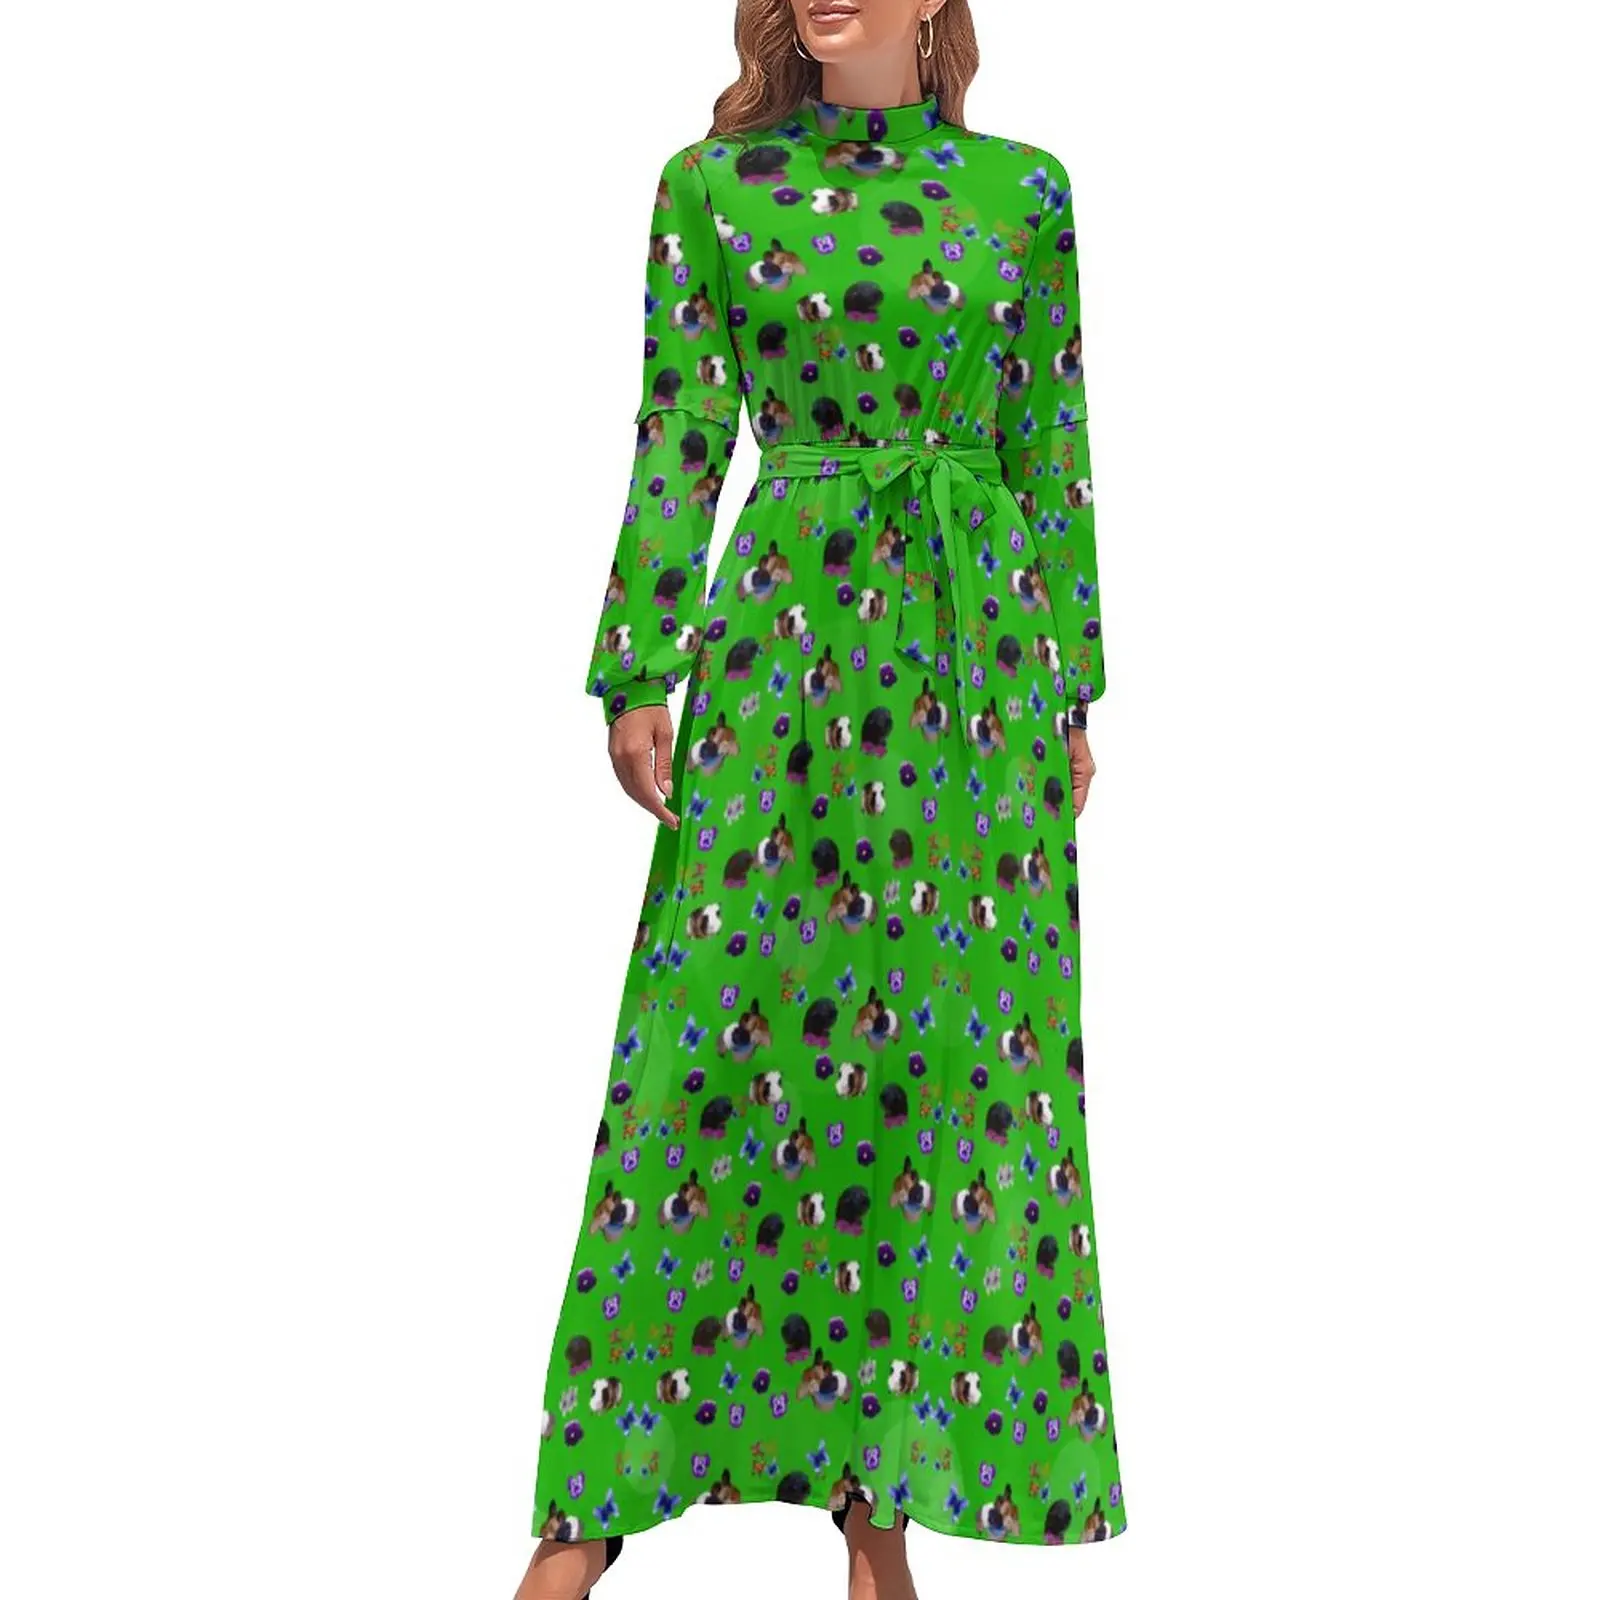 Guinea Pig Dress Pansies And Butterflies Street Wear Bohemia Dresses Female Long Sleeve High Waist Trendy Long Maxi Dress